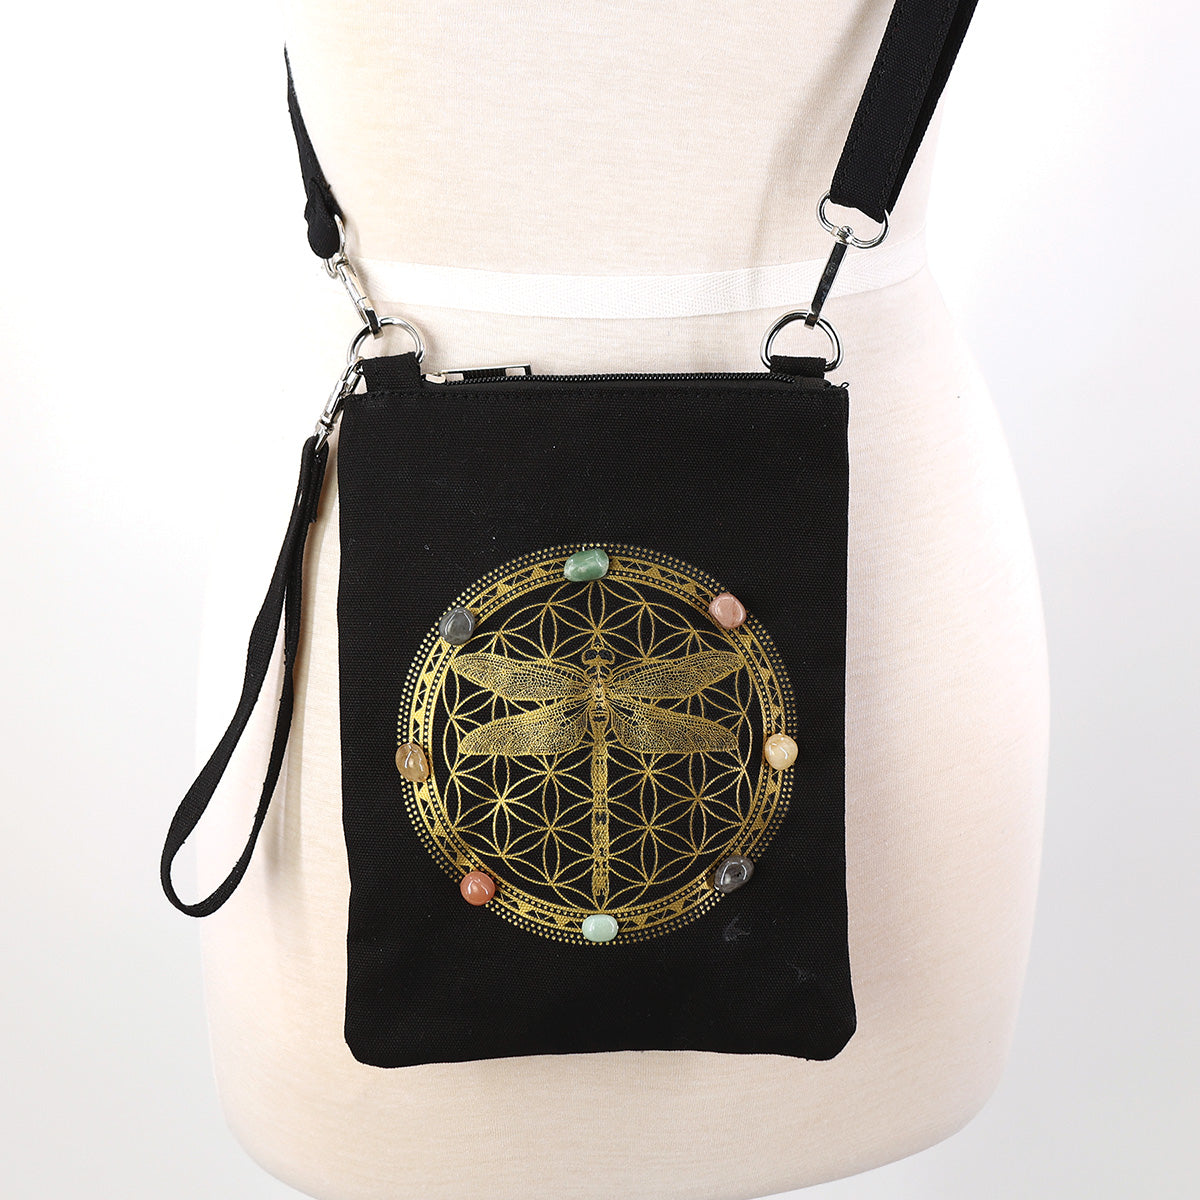 Dragonfly & Crystal Shoulder Bag in Canvas